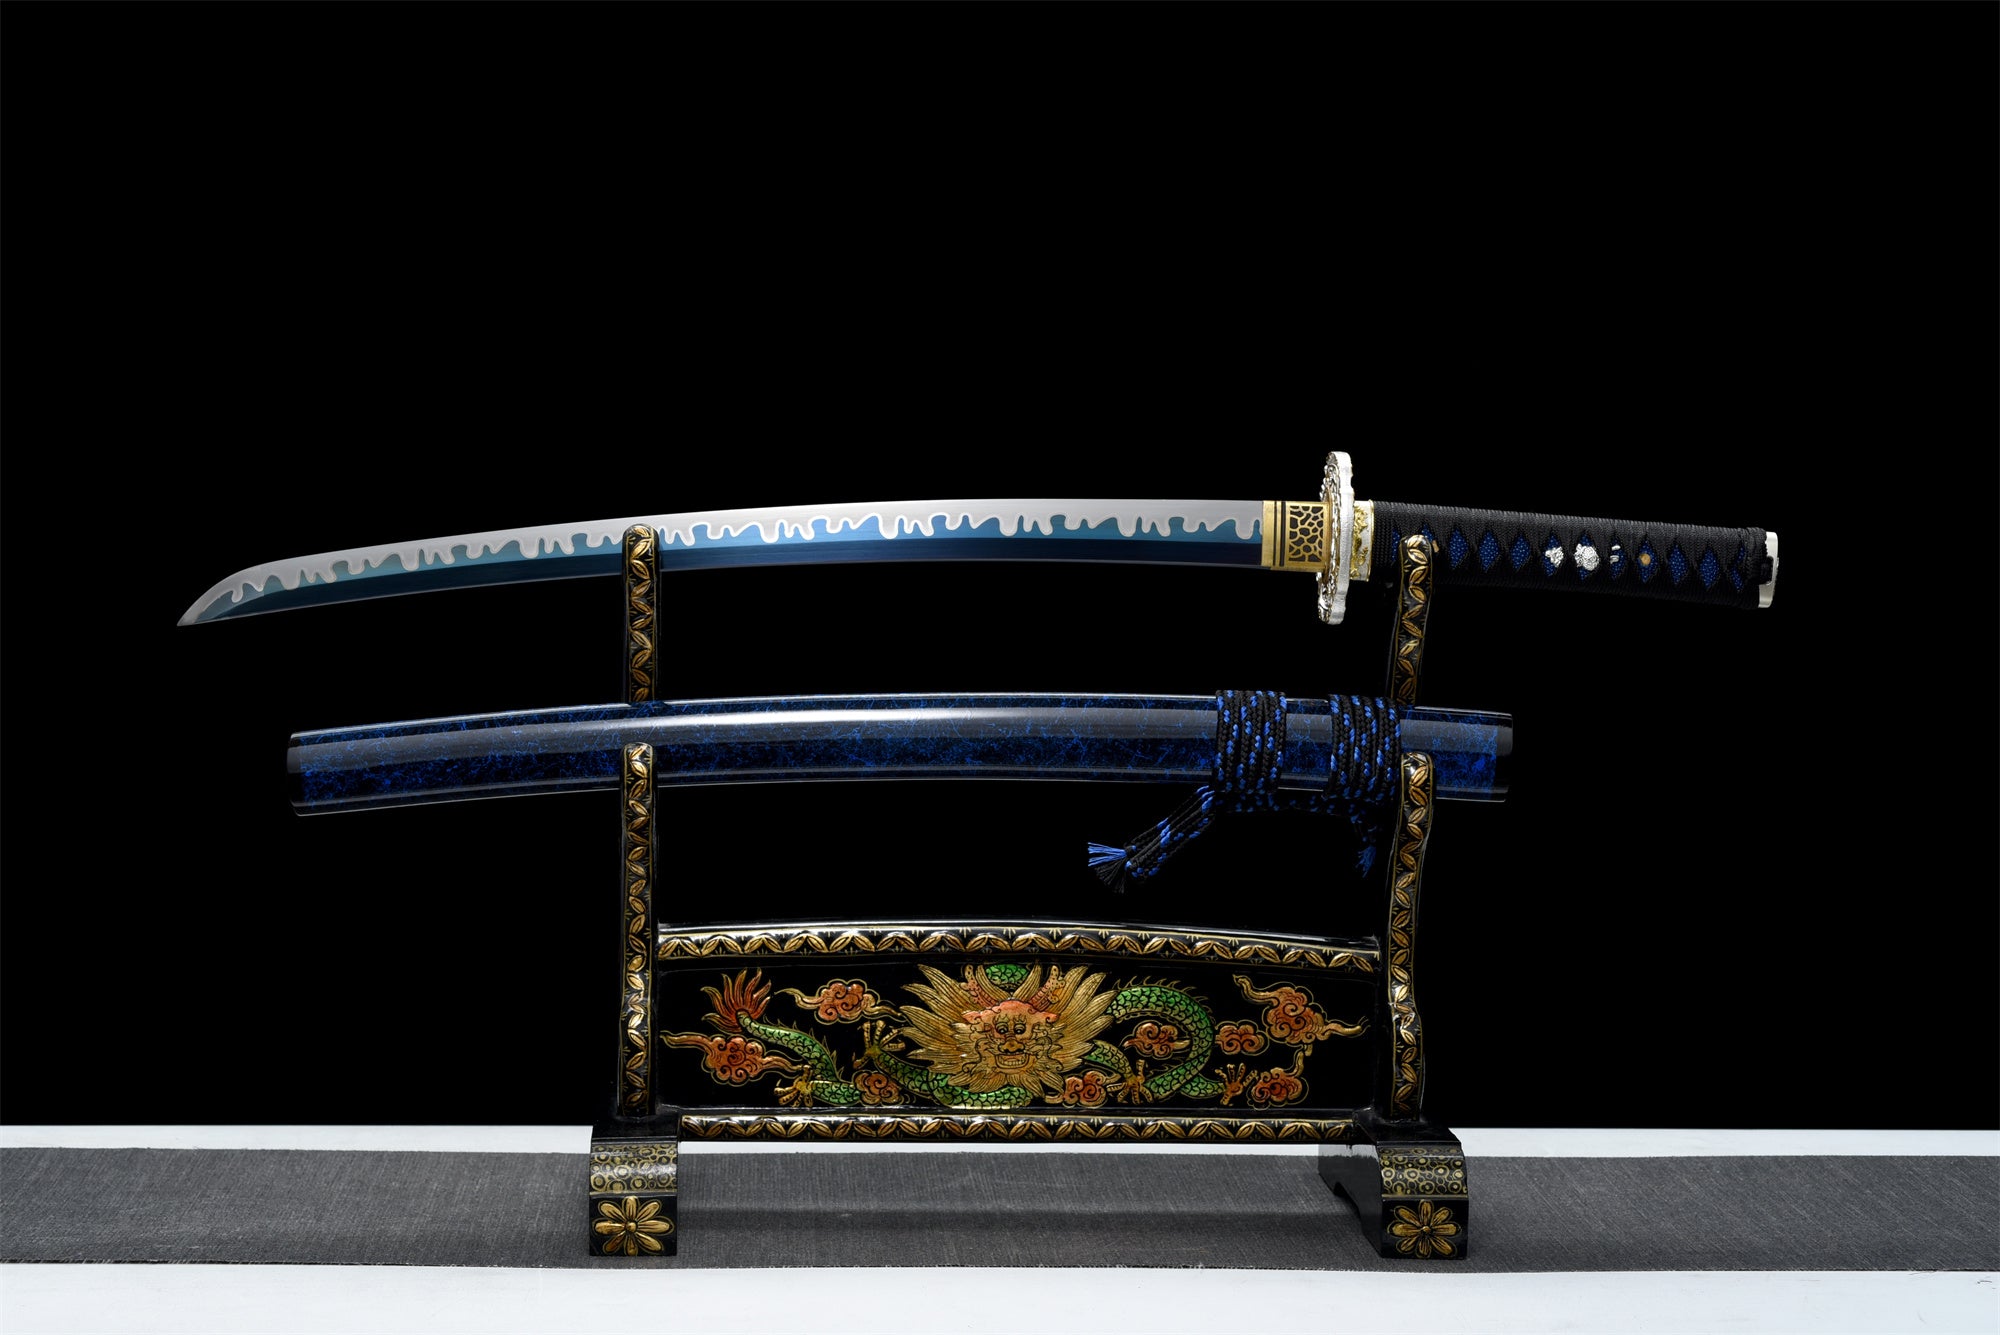 Yaomei Wakizashi Sword,Baked Blue Blade,Japanese Samurai Sword,Real Handmade Wakizashi,High manganese steel